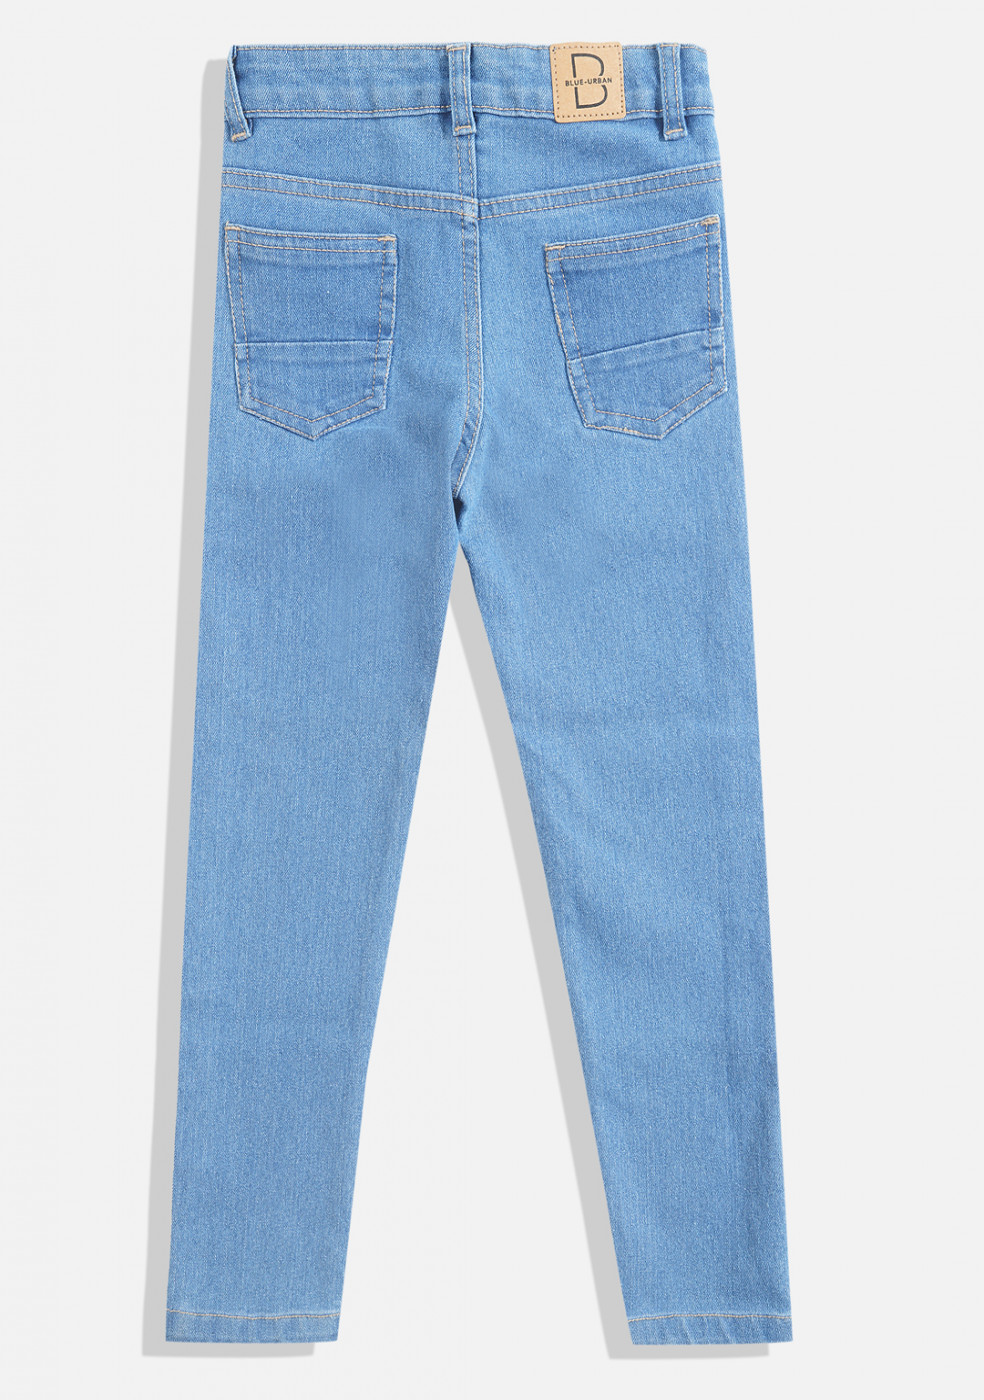 Light Blue Denim Jeans For Boys